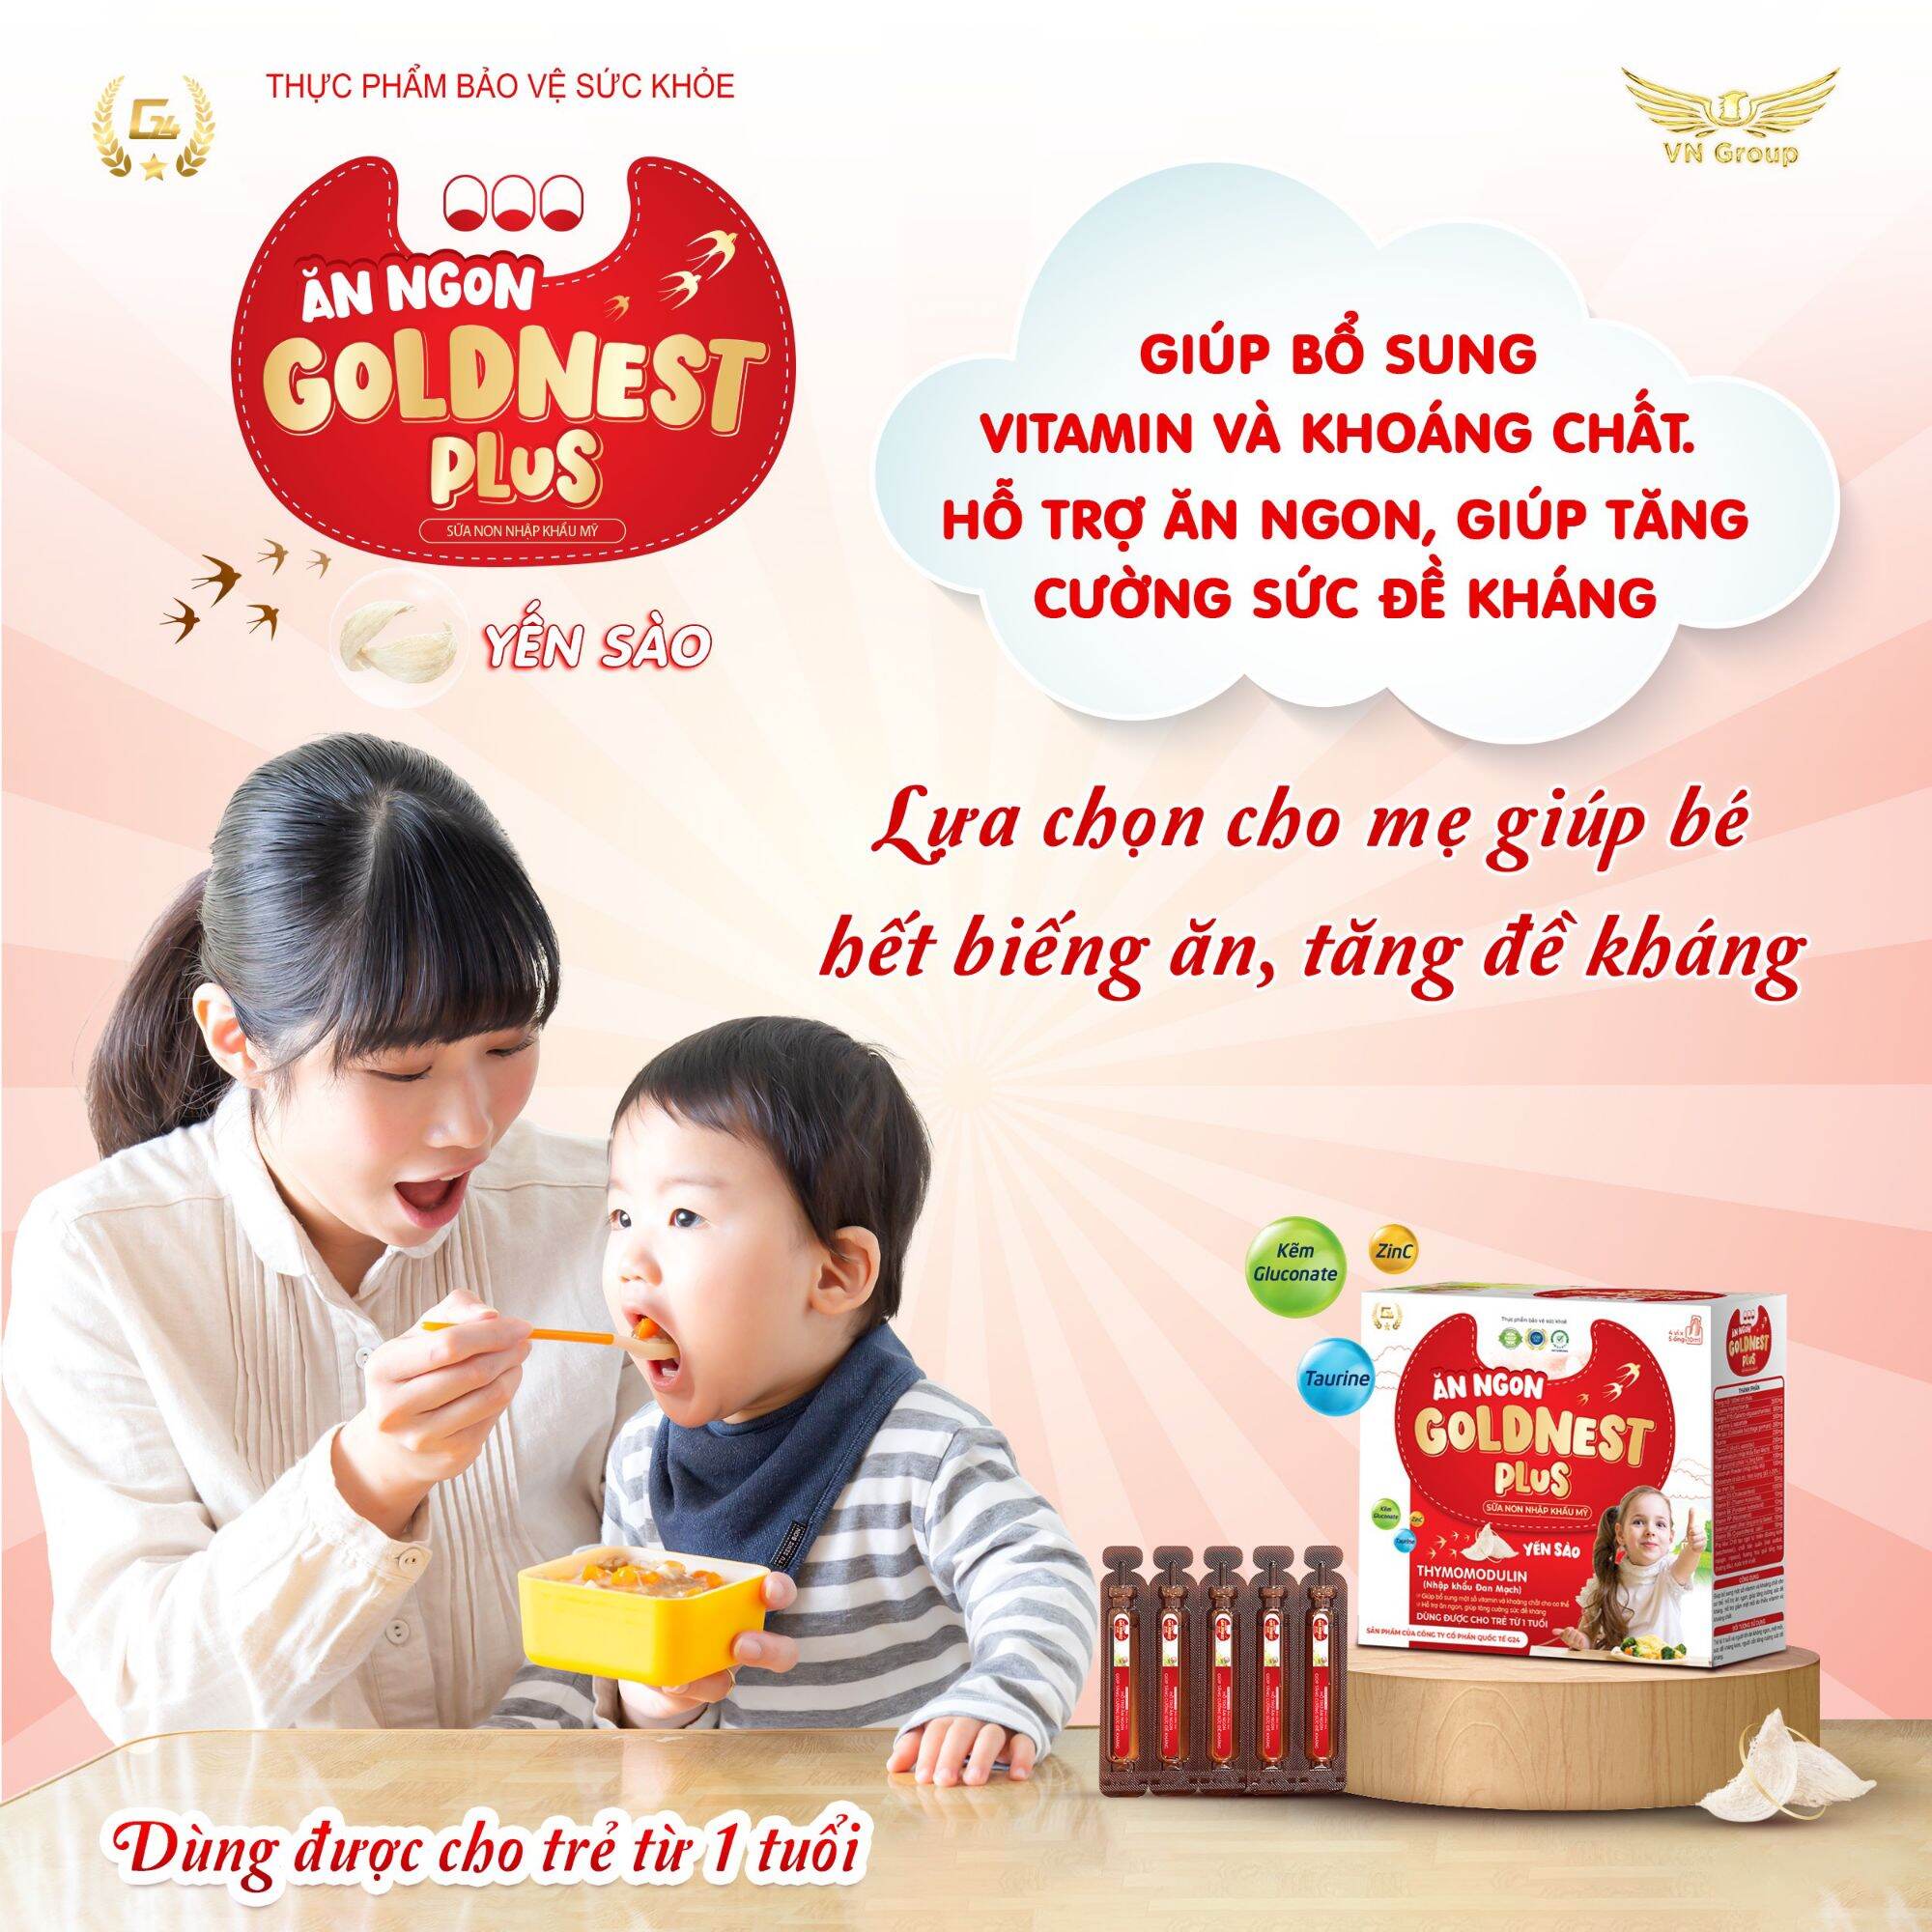 Siro Ăn Ngon Gold Nest Plus